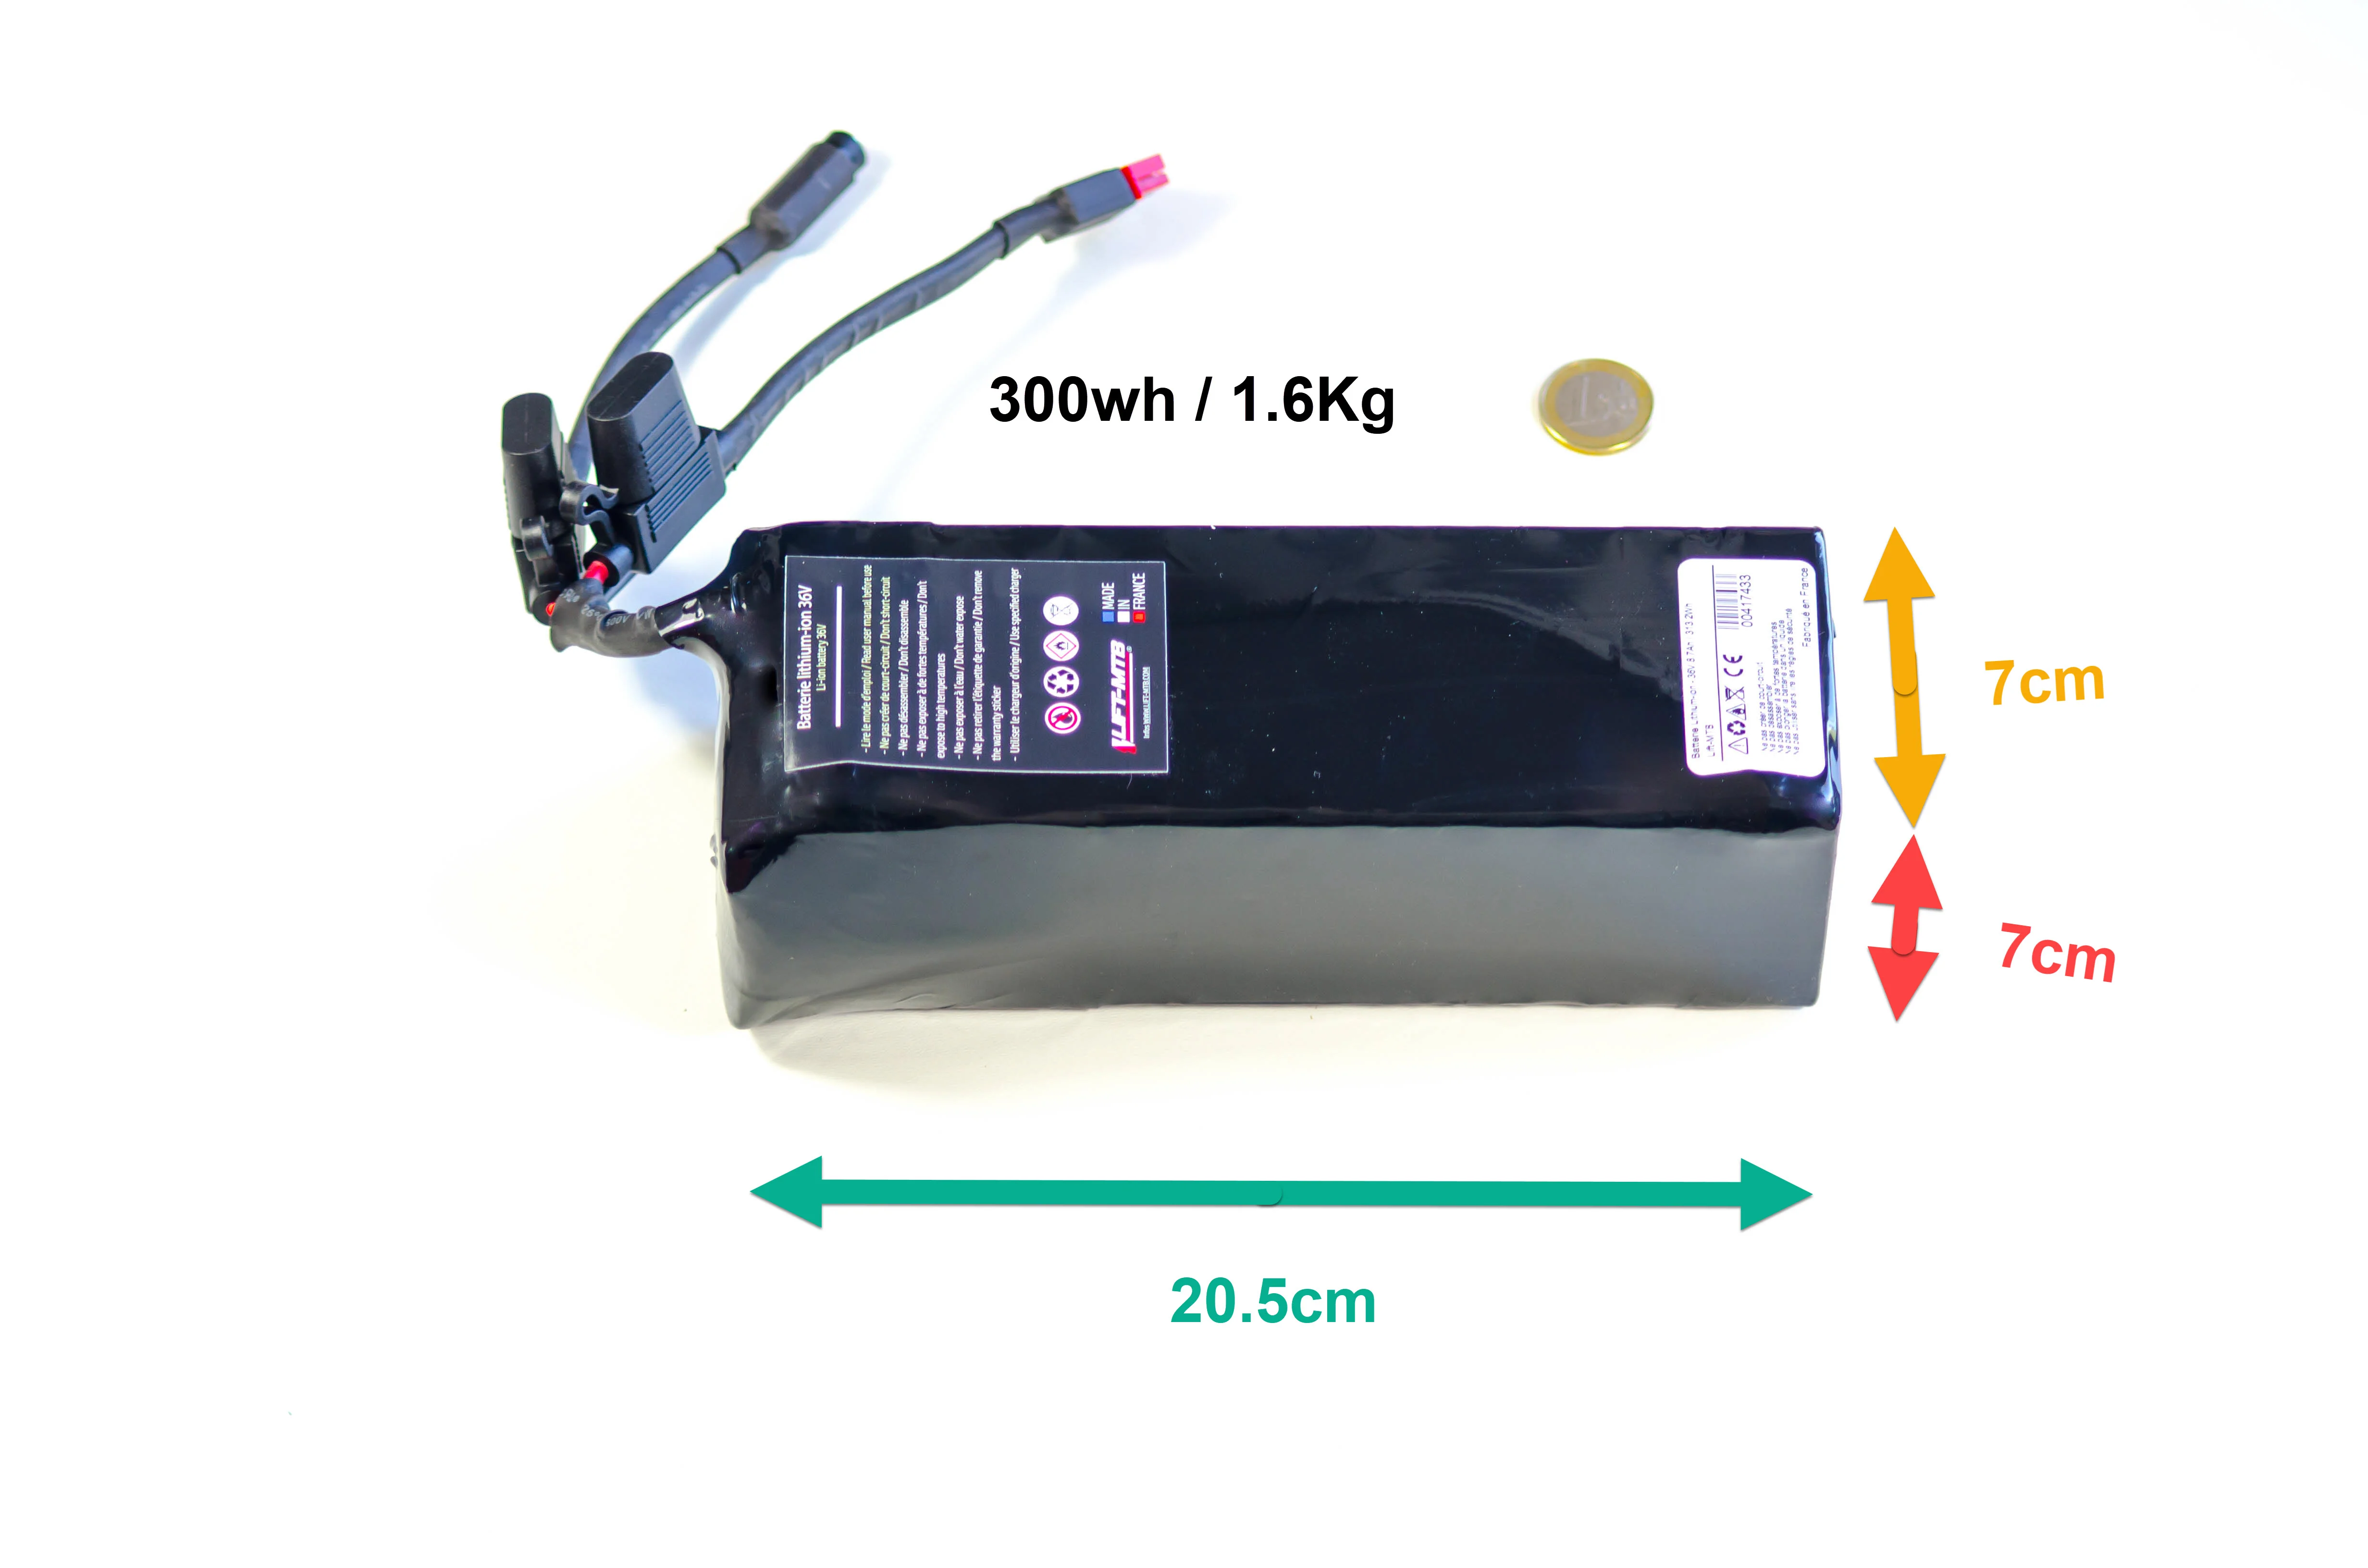 Batteria elettrica da 300 Wh per il kit di motori a pedali LIFT-MTB.